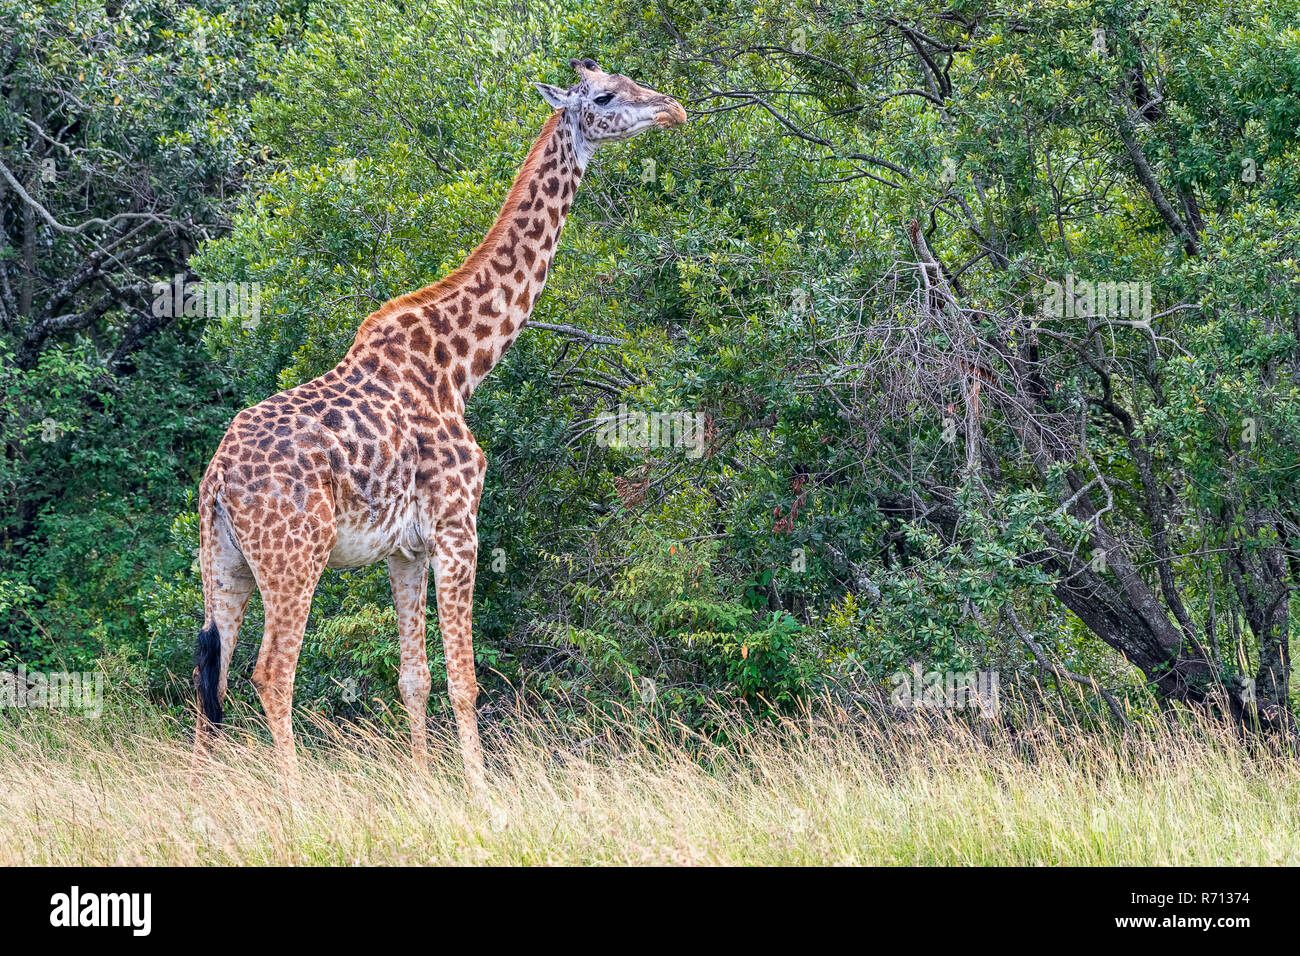 Jirafa (Giraffa camelopardalis), la alimentación del árbol, el Masai Mara, Kenya Foto de stock